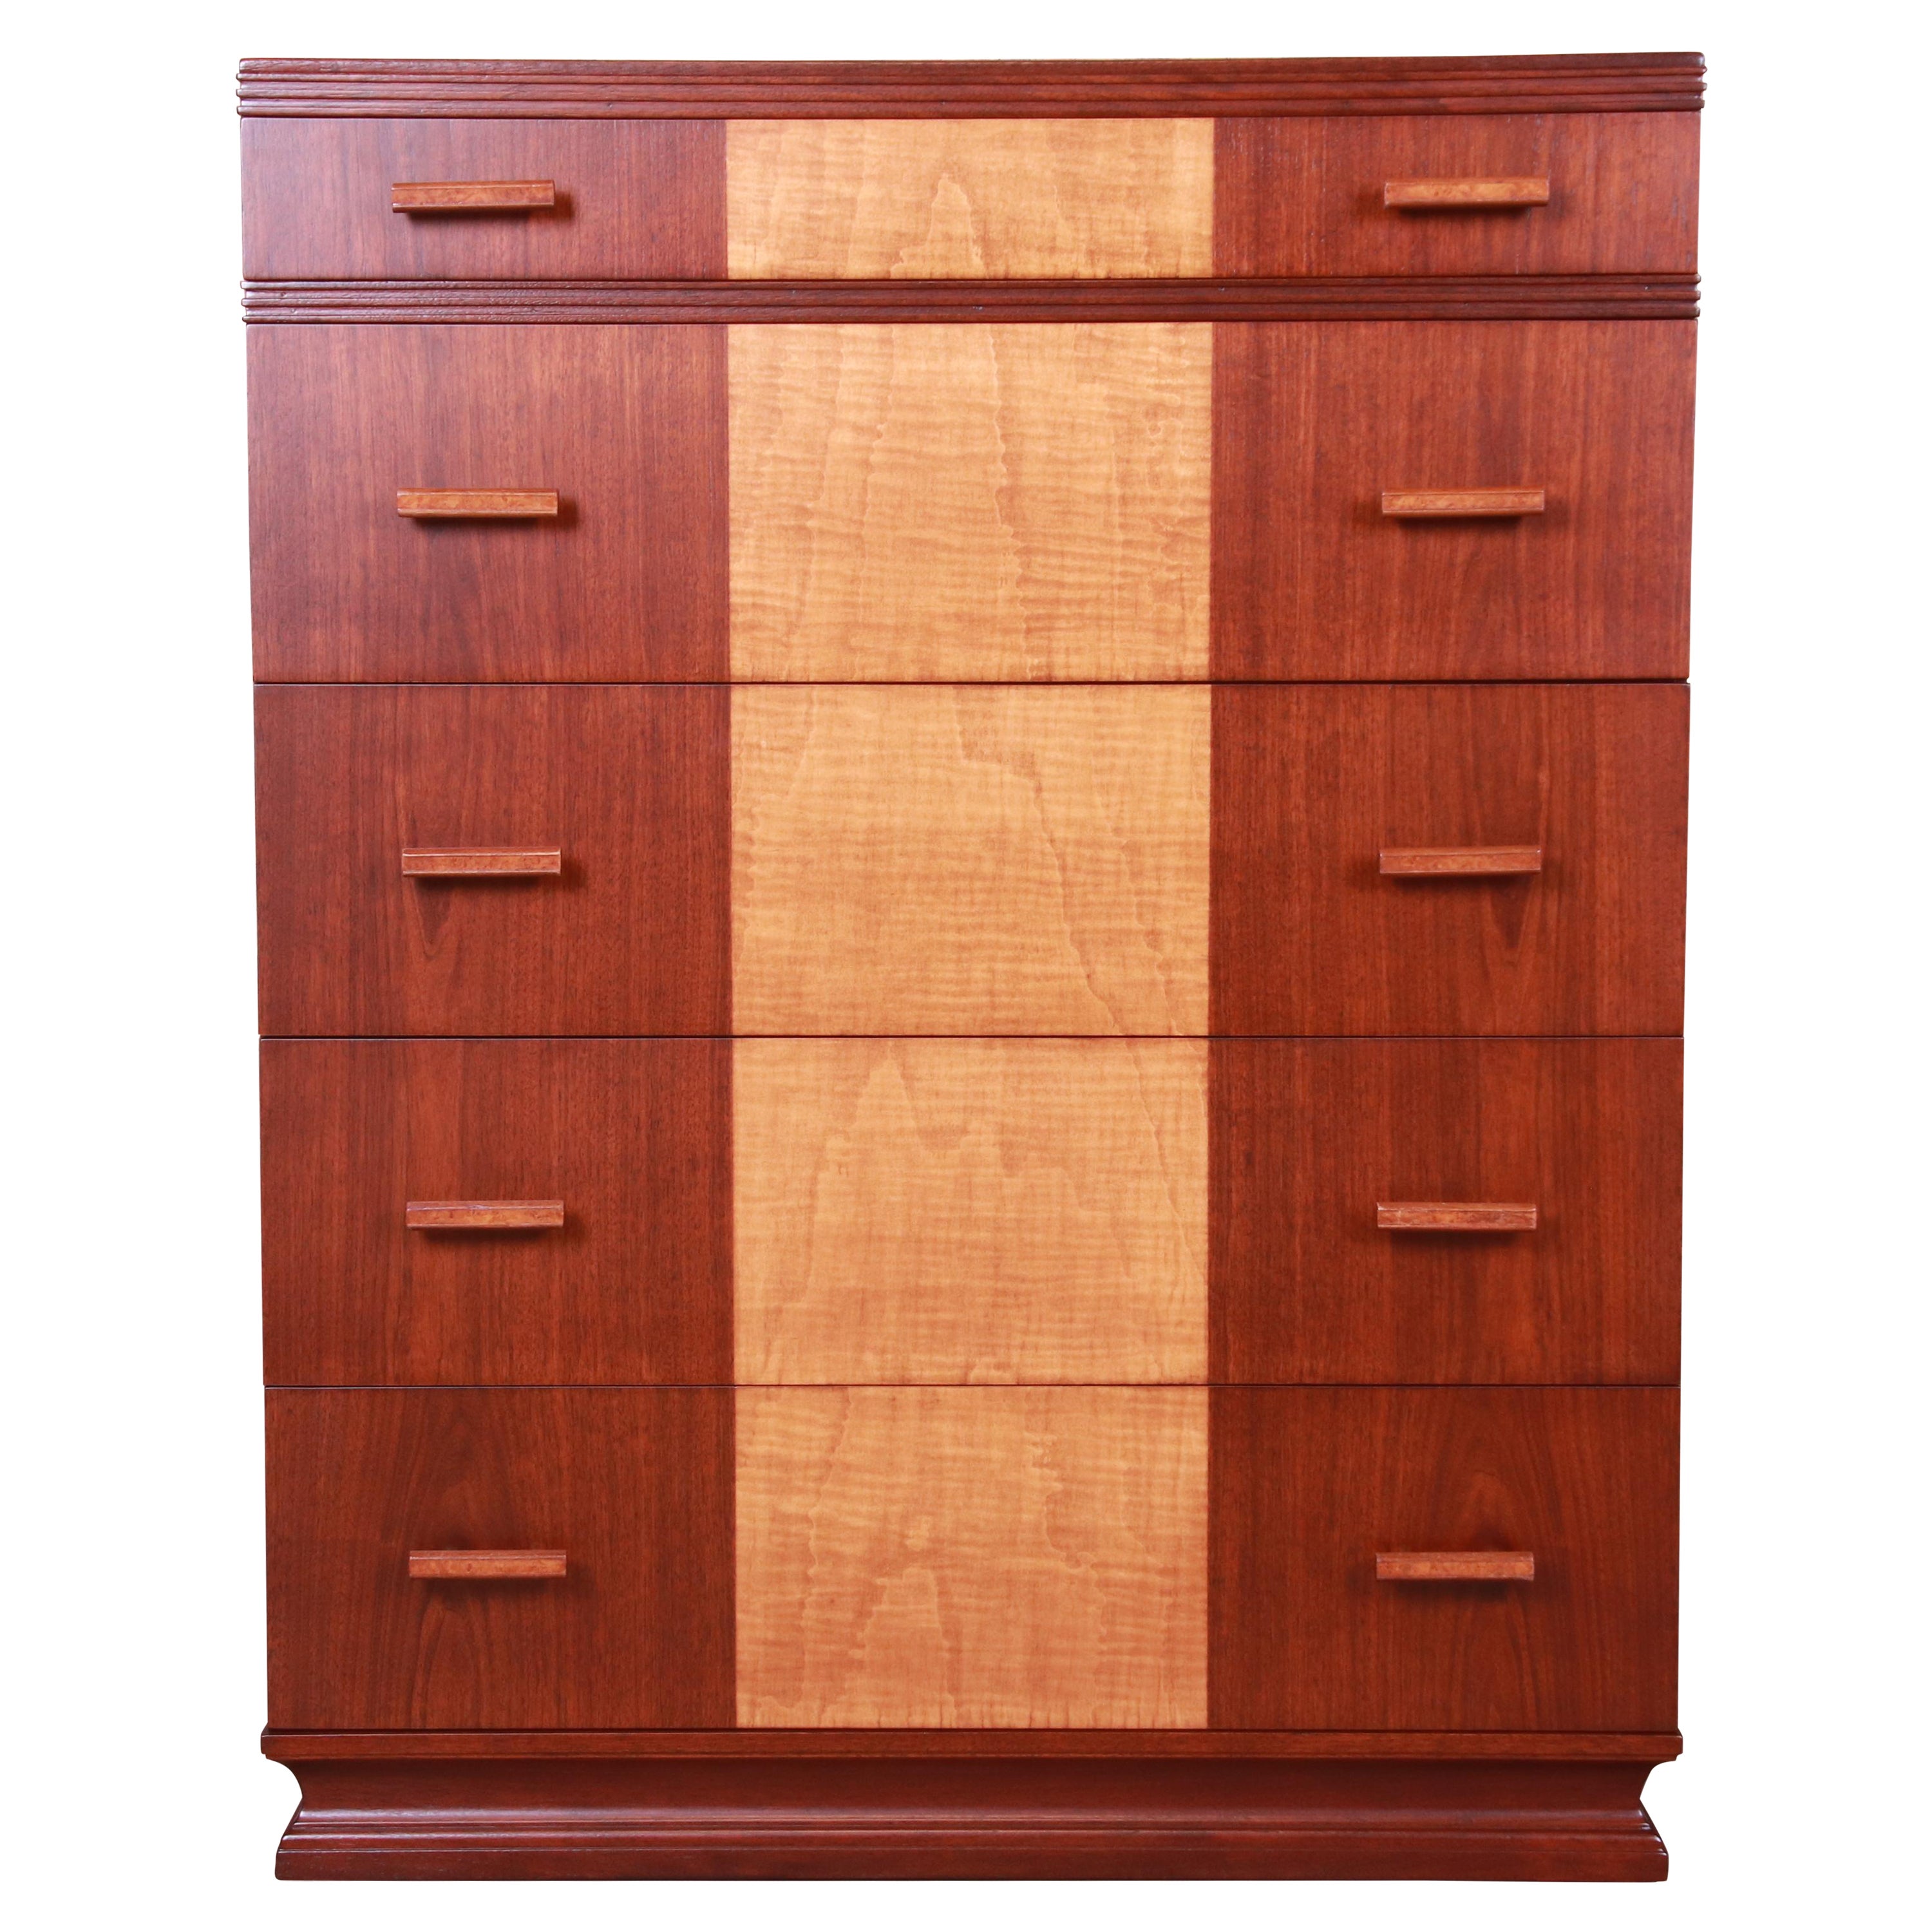 Kittinger Art Deco Walnut and Maple Highboy Dresser, Newly Refinished